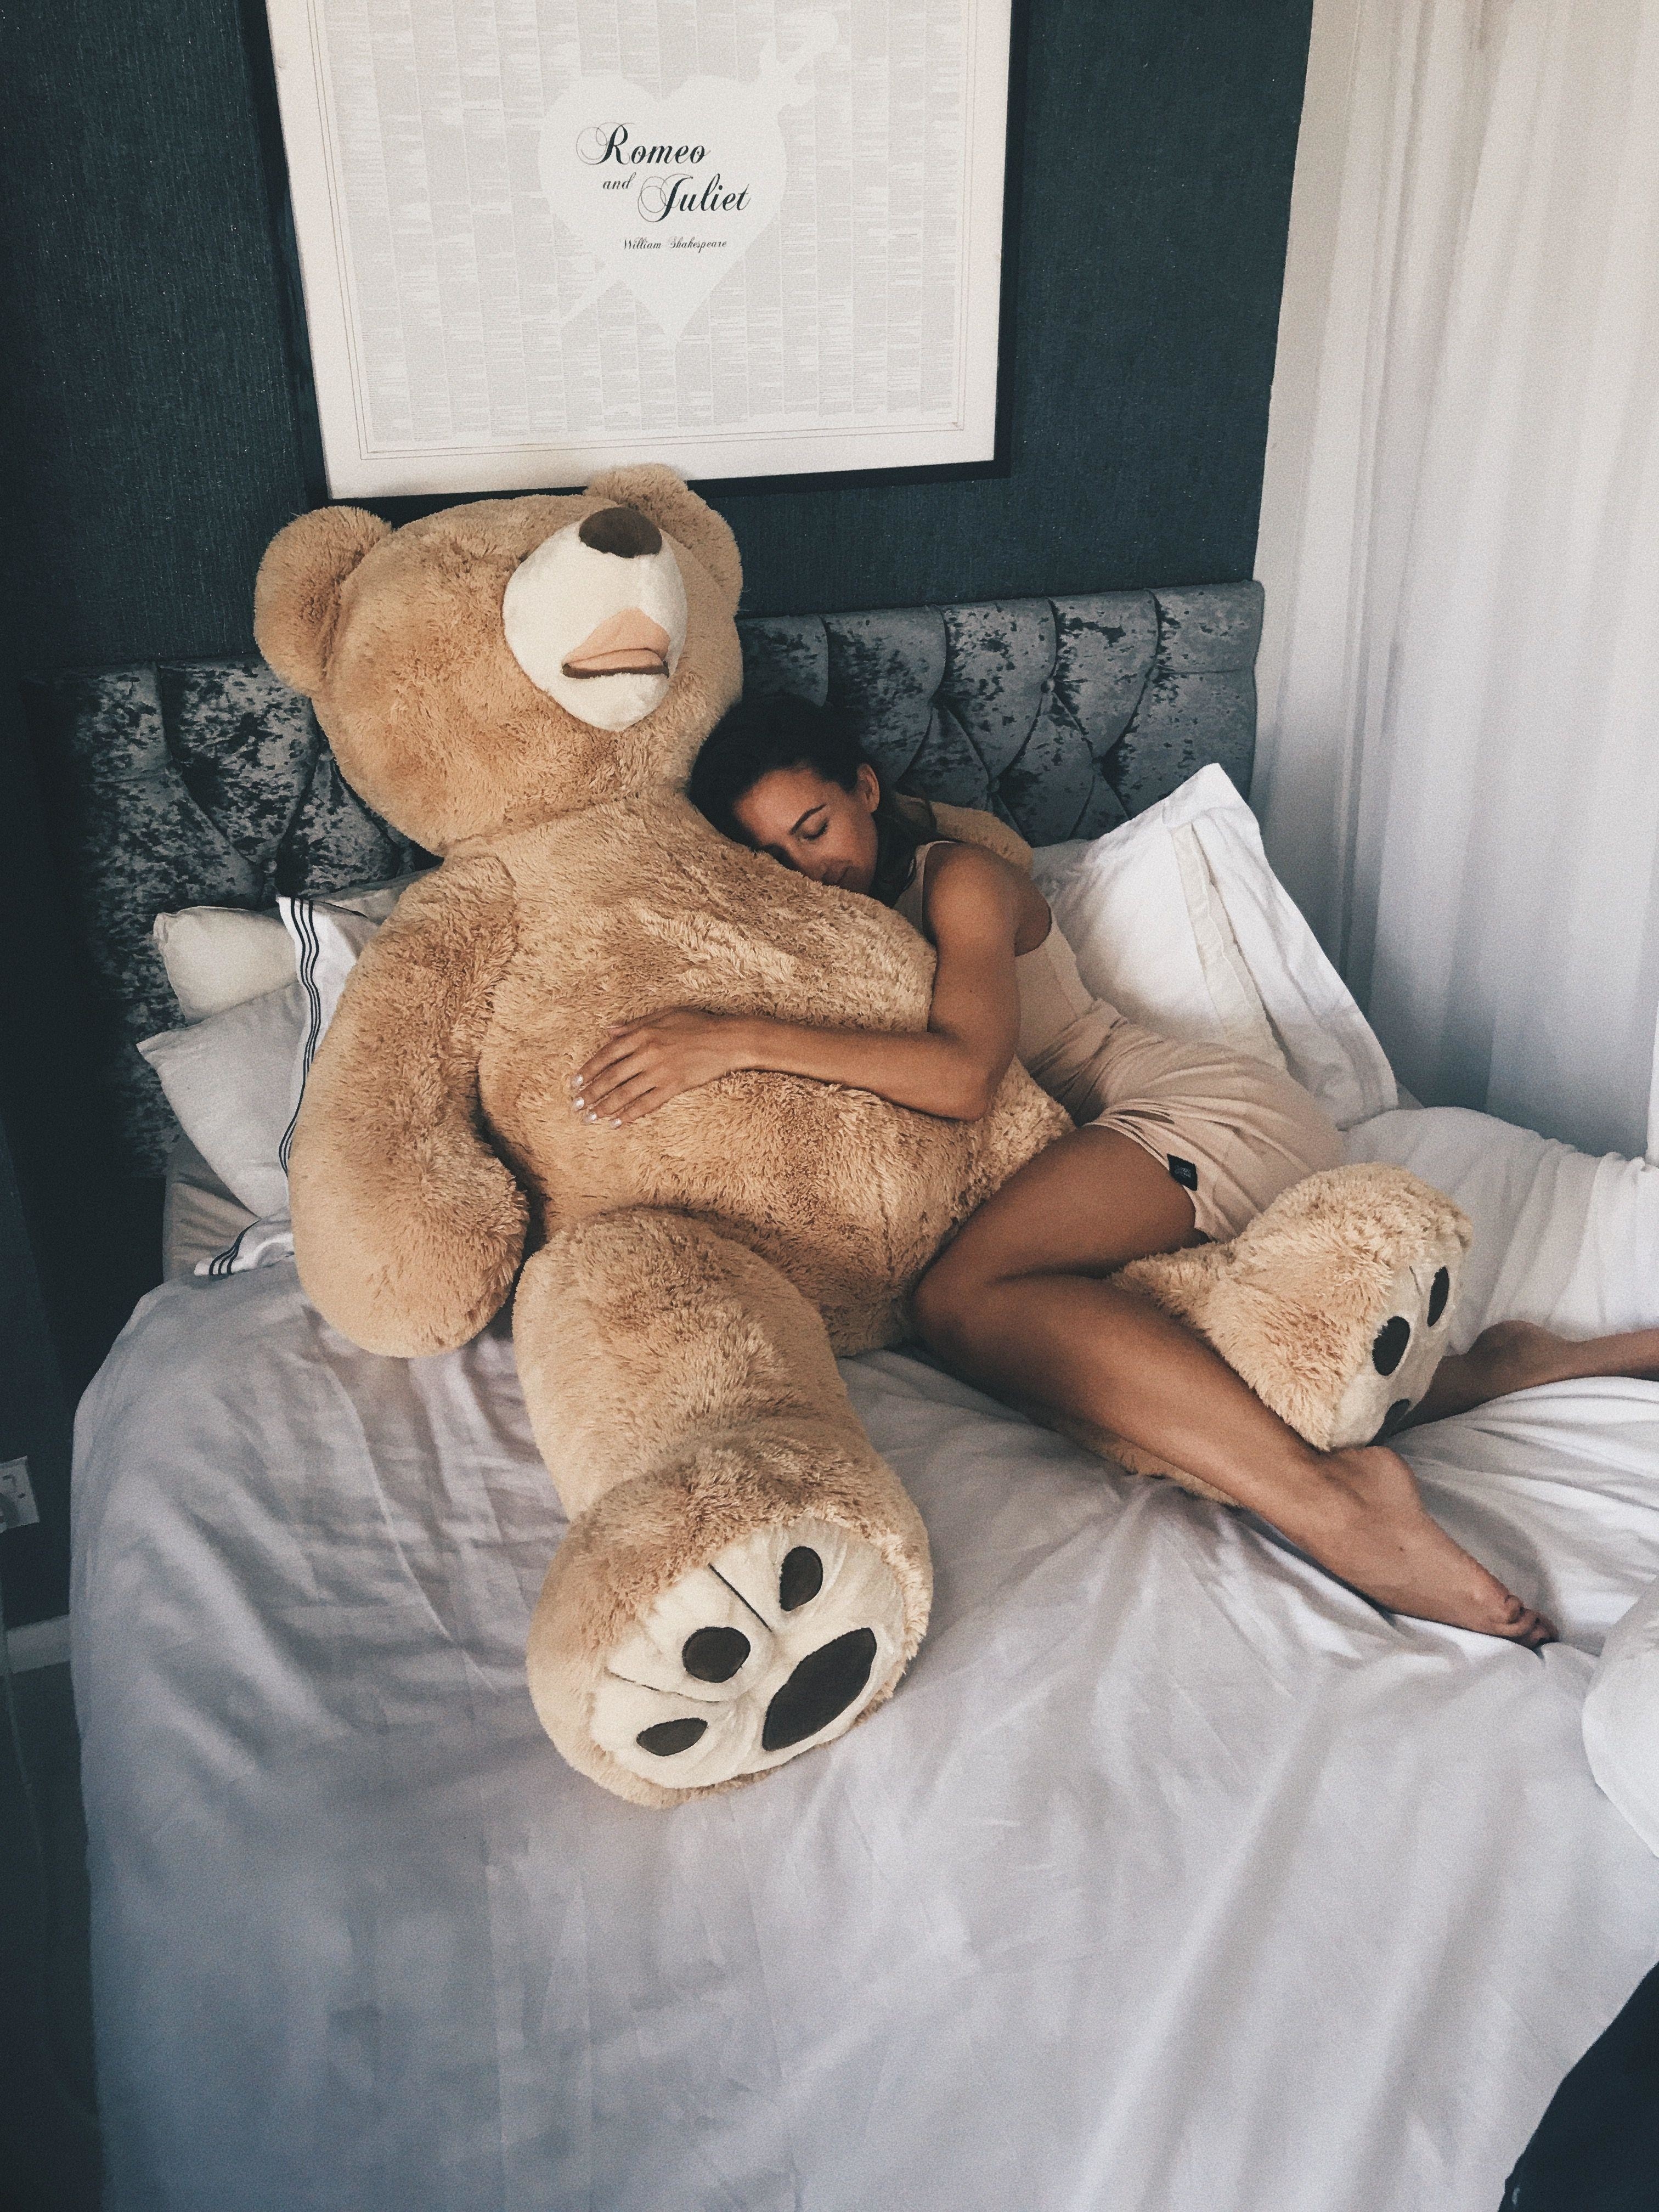 Teddy Bear Porn - Sex with a teddy bear guy - porn photo